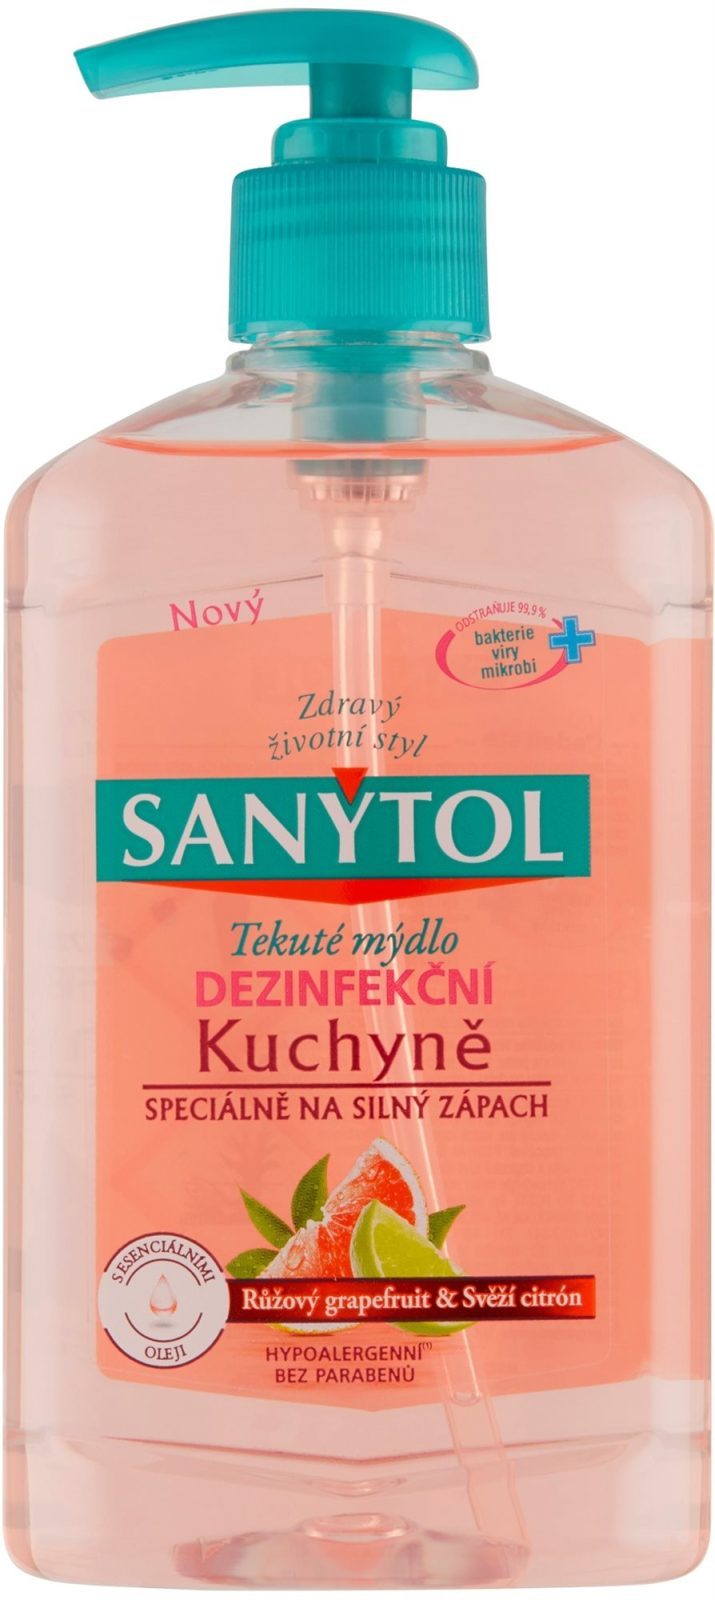 Folyékony szappan SANYTOL konyhai fertőtlenítő szappan 250 ml